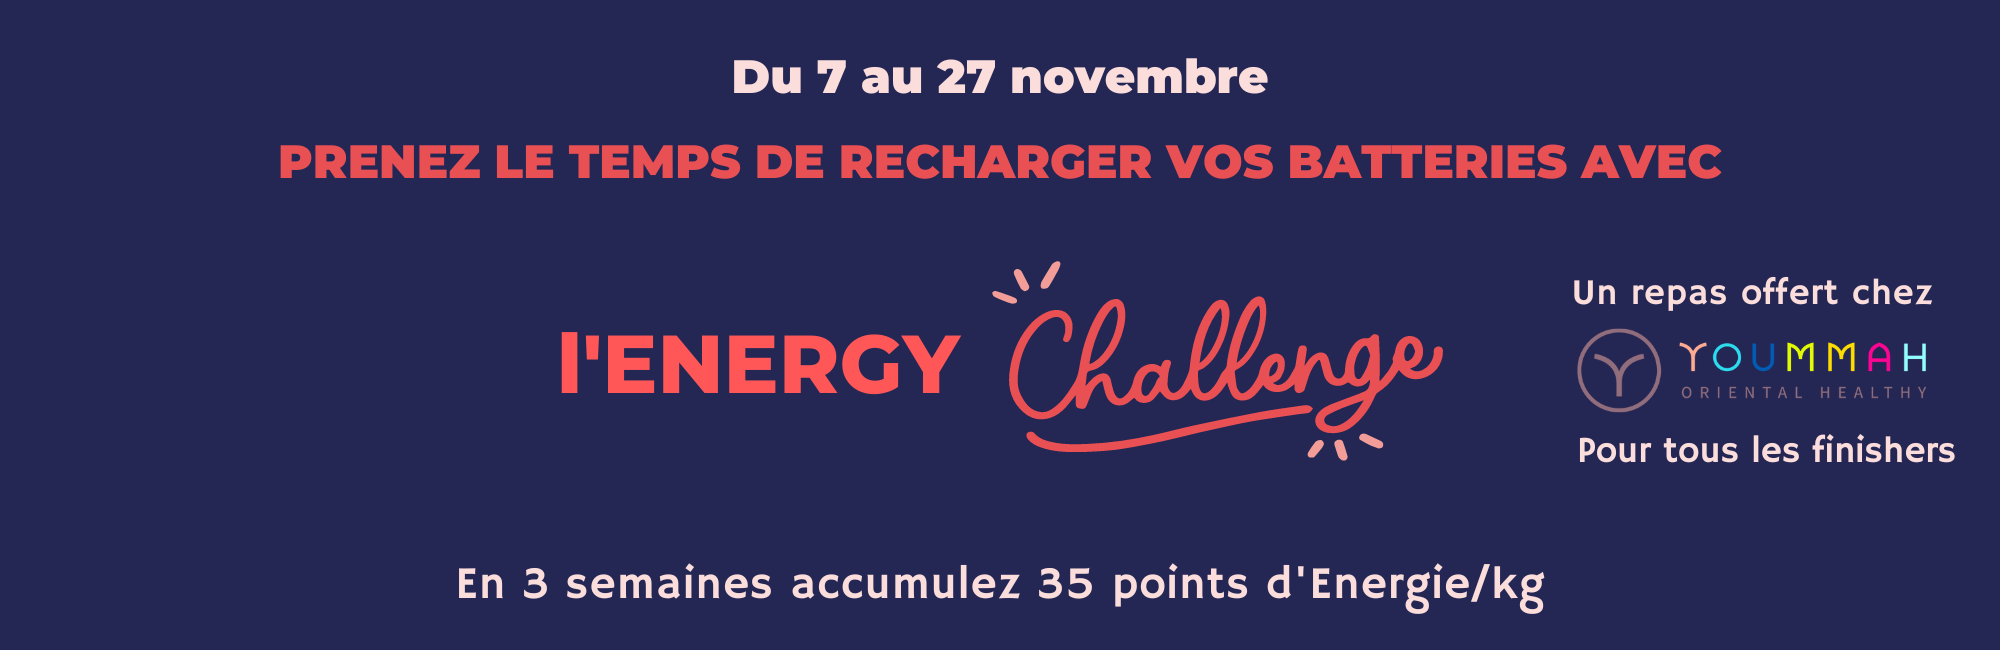 Bandeau Energy Challenge (1)